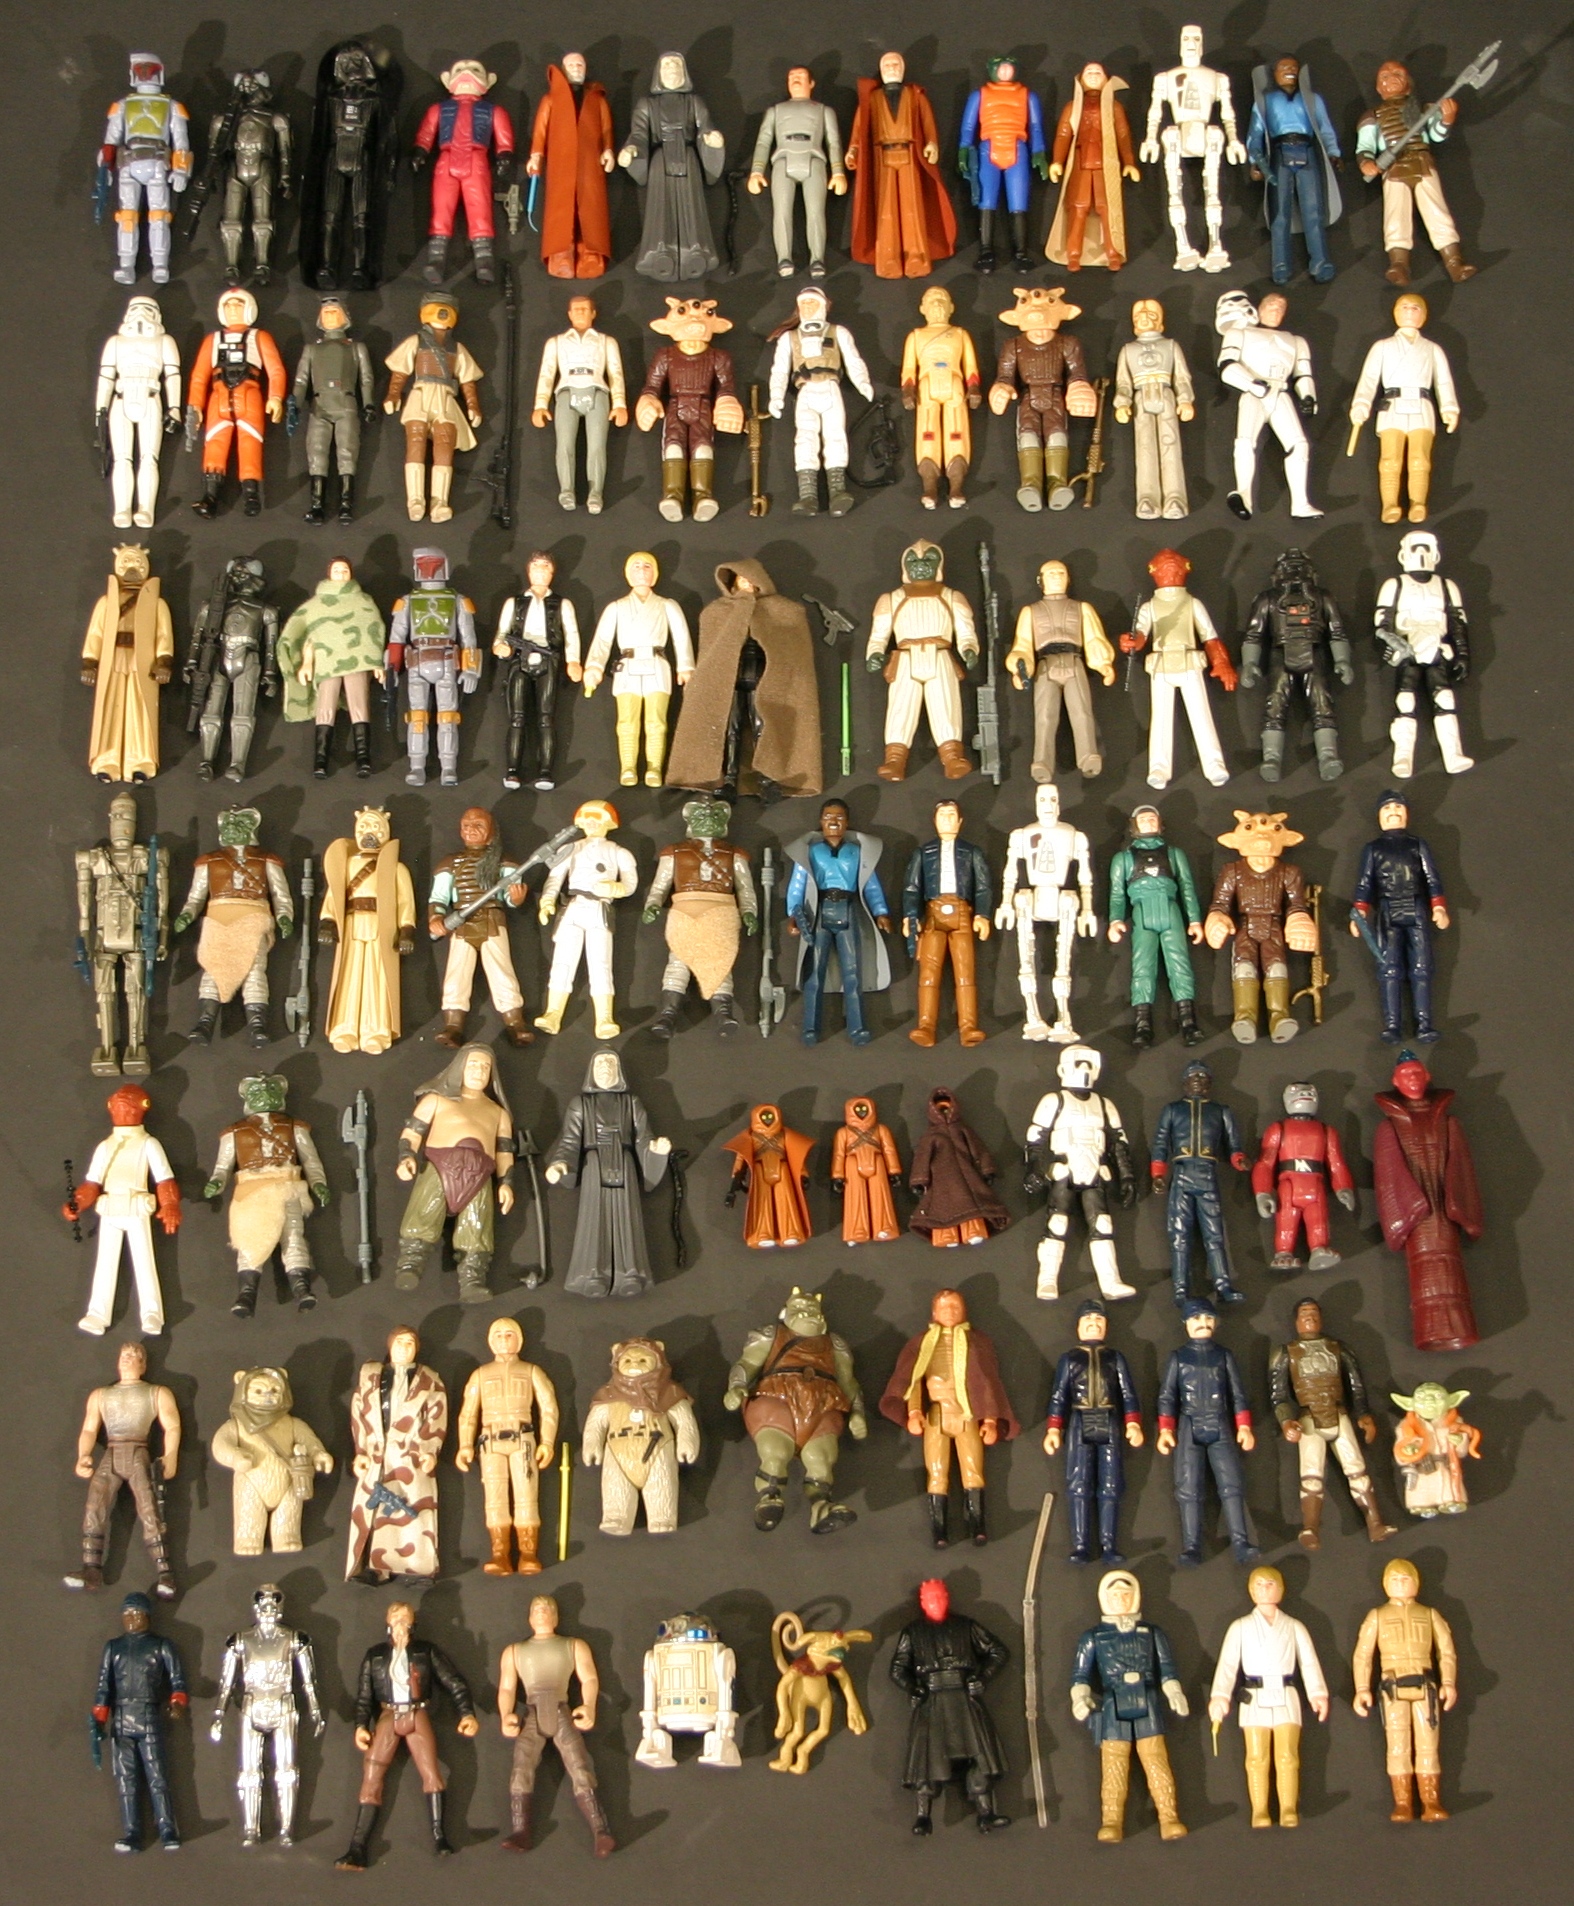 1970s star wars figures